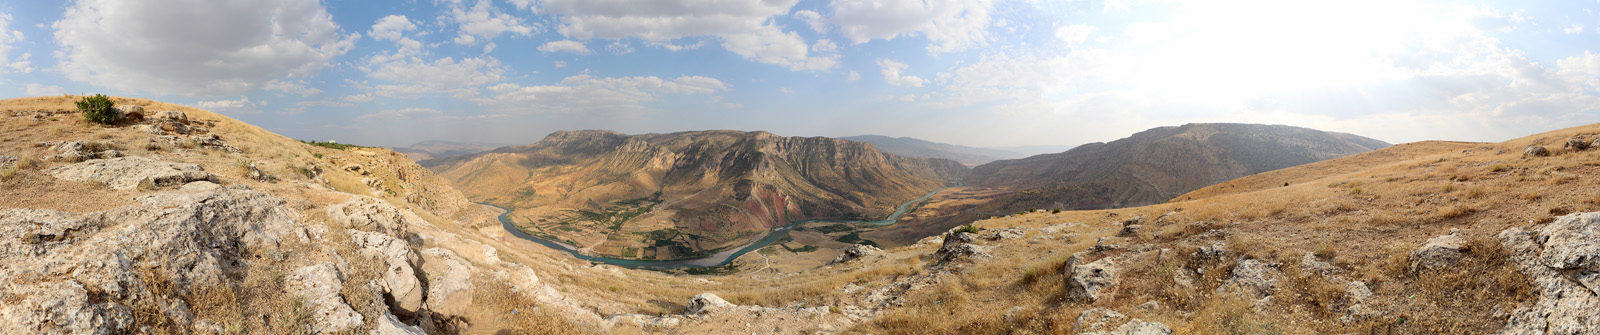 Botan valley panorama